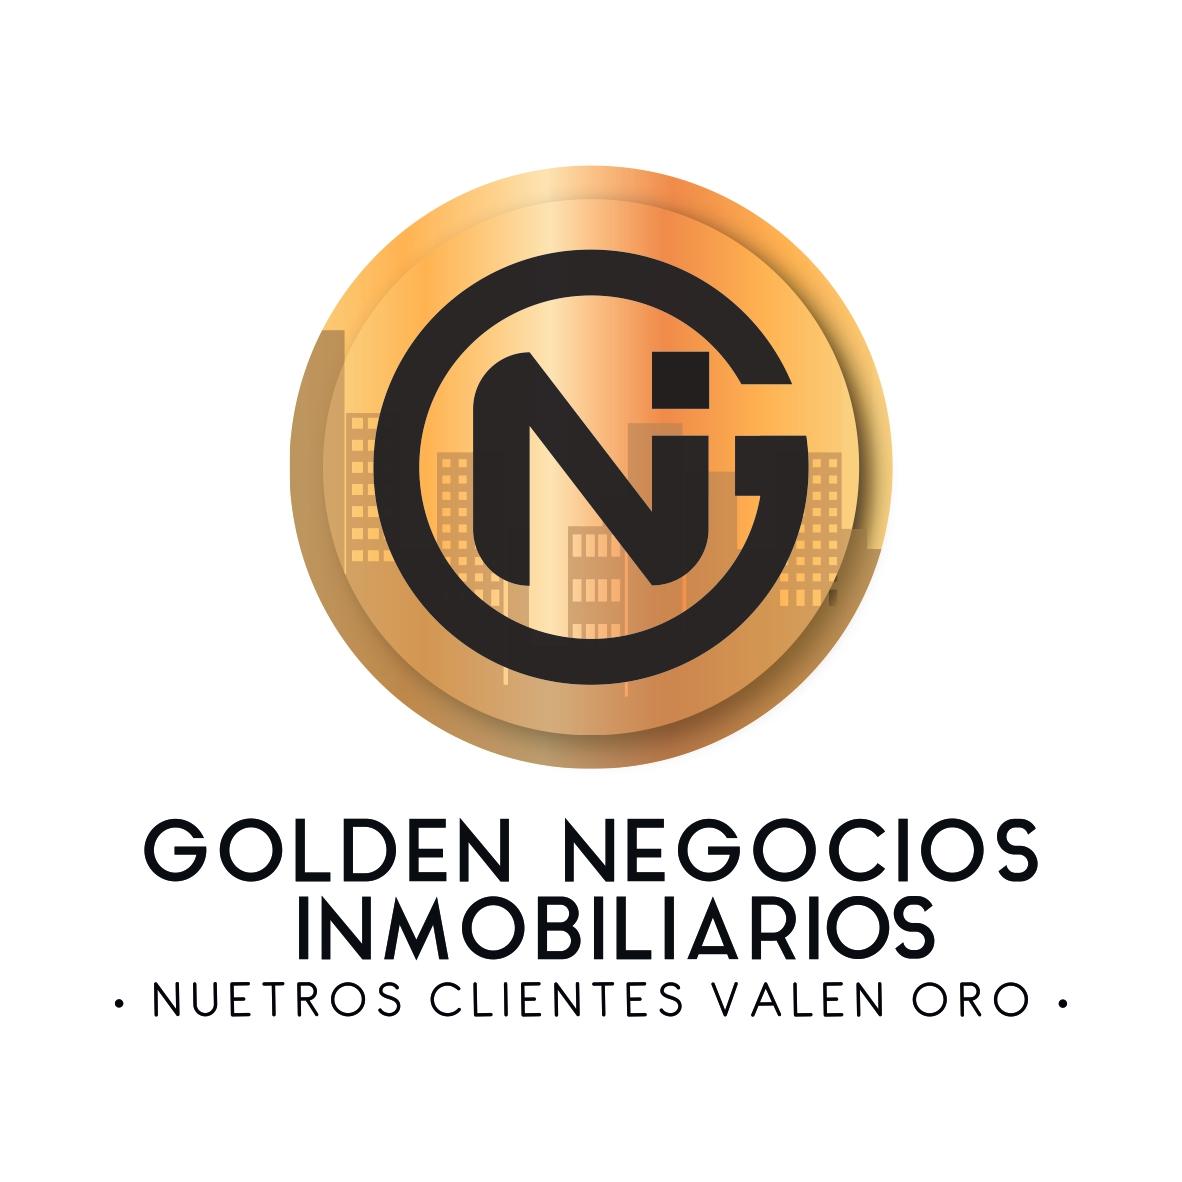 GOLDEN NEGOCIOS INMOBILIARIOS